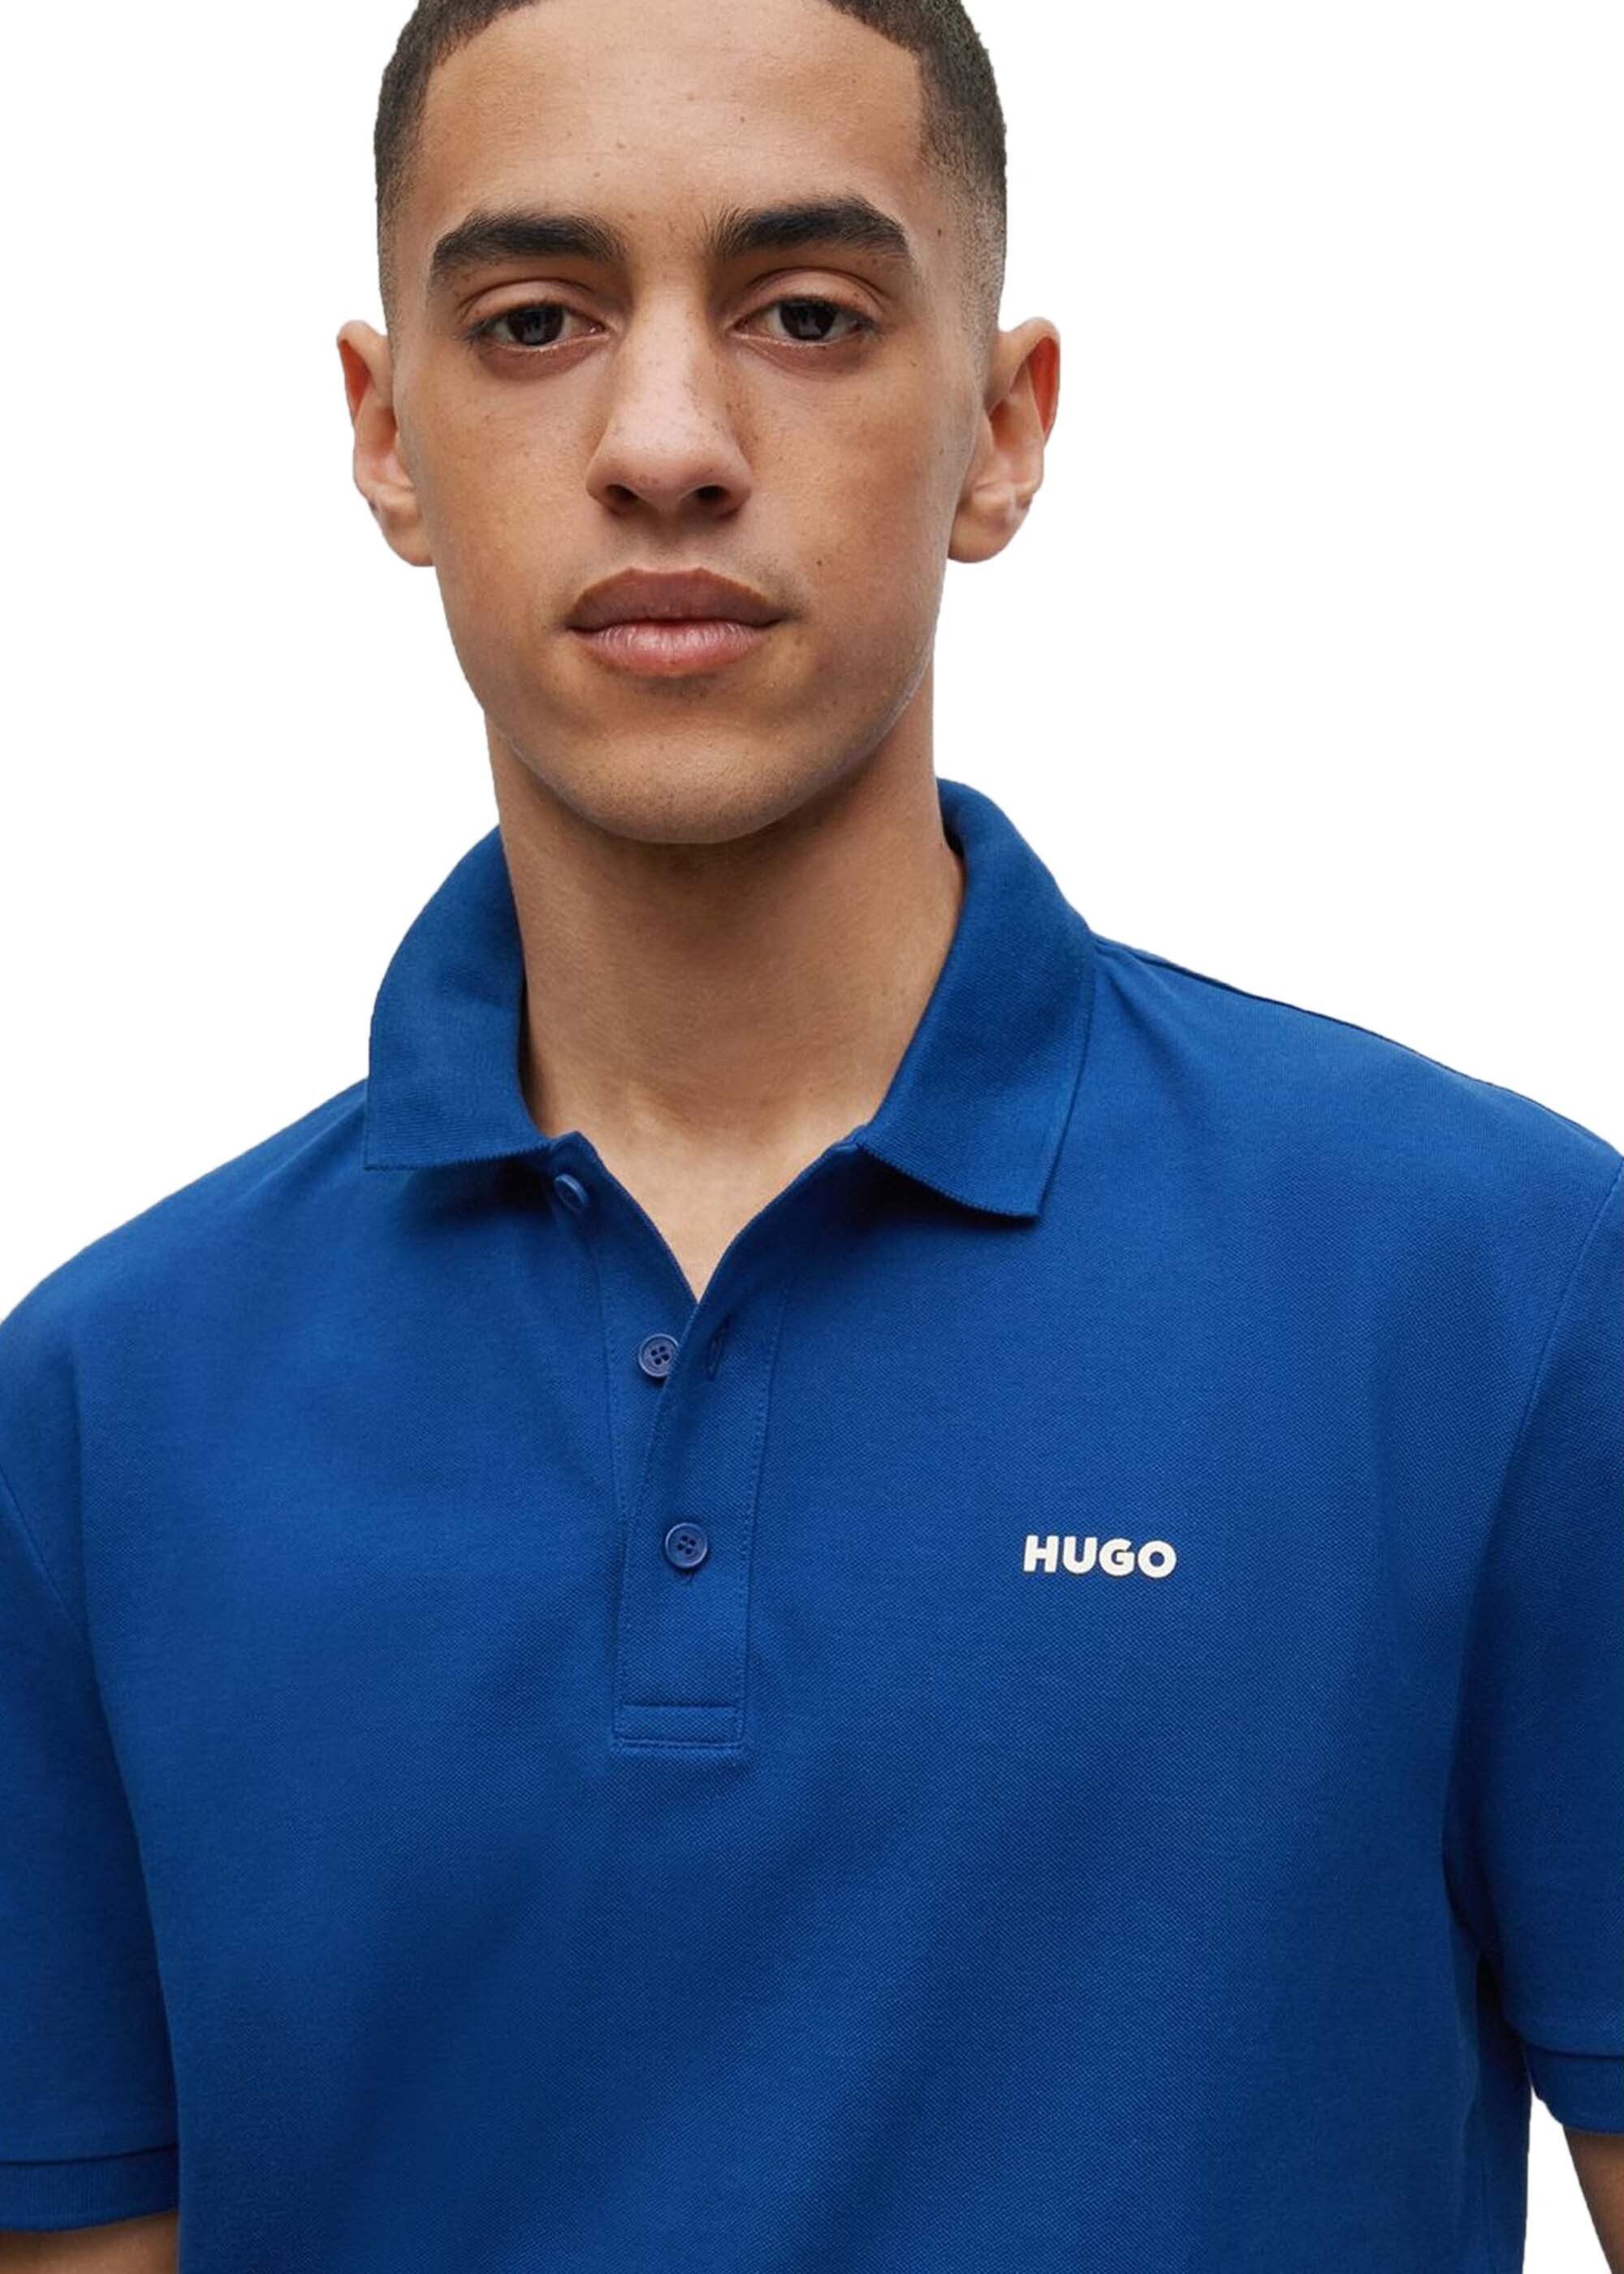 Polo-Shirt Poloshirt 1/2-Arm Blau (Navy) HUGO Pique, Herren DONOS222, -